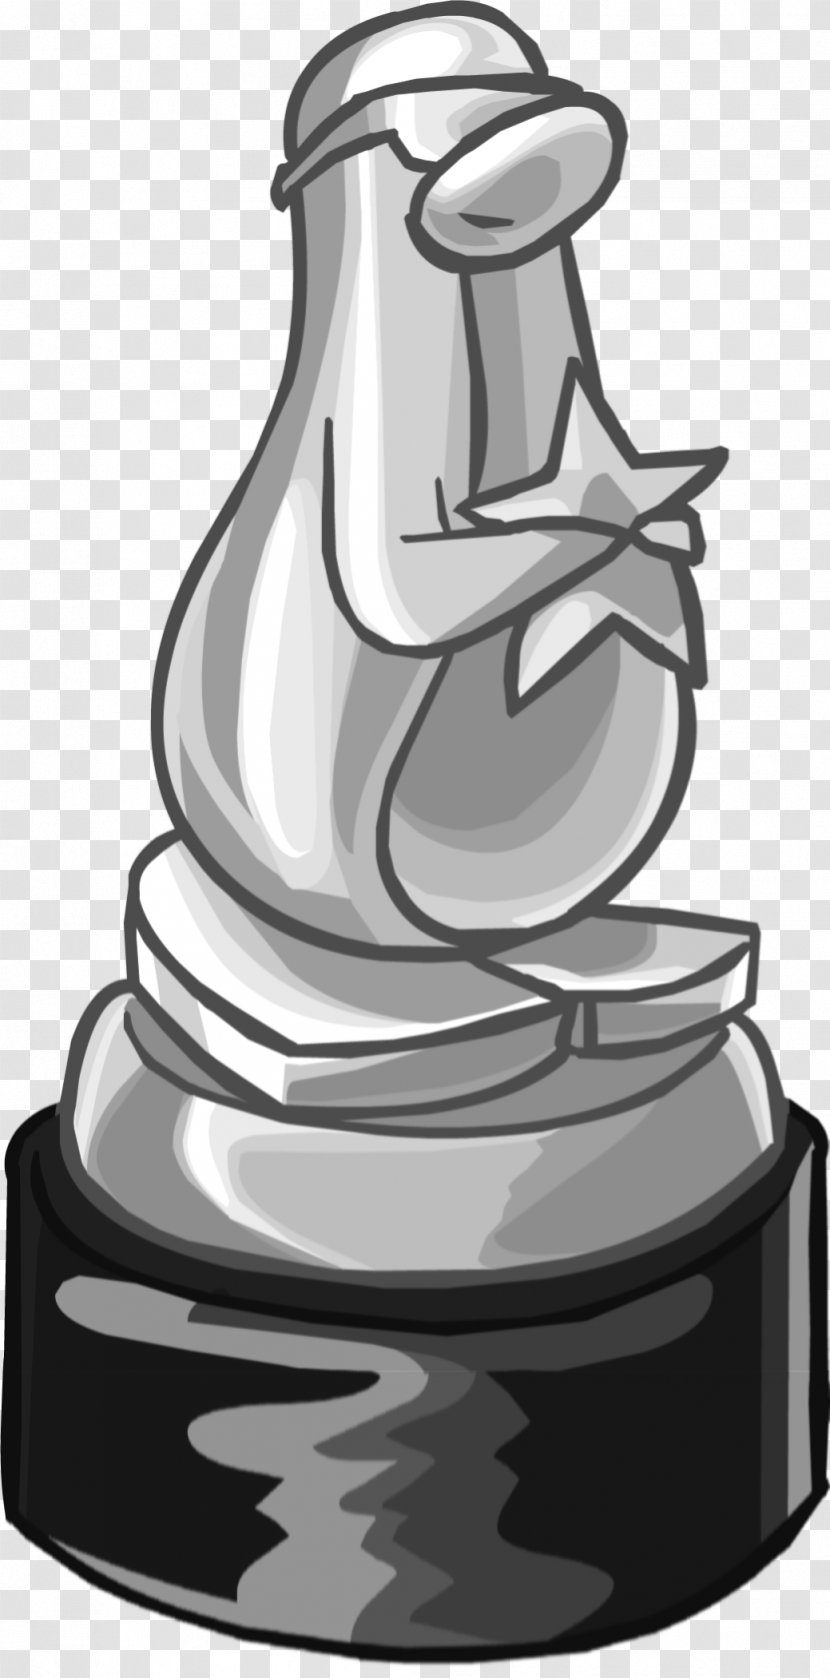 Club Penguin Video Games Gold Award - Bottle Transparent PNG